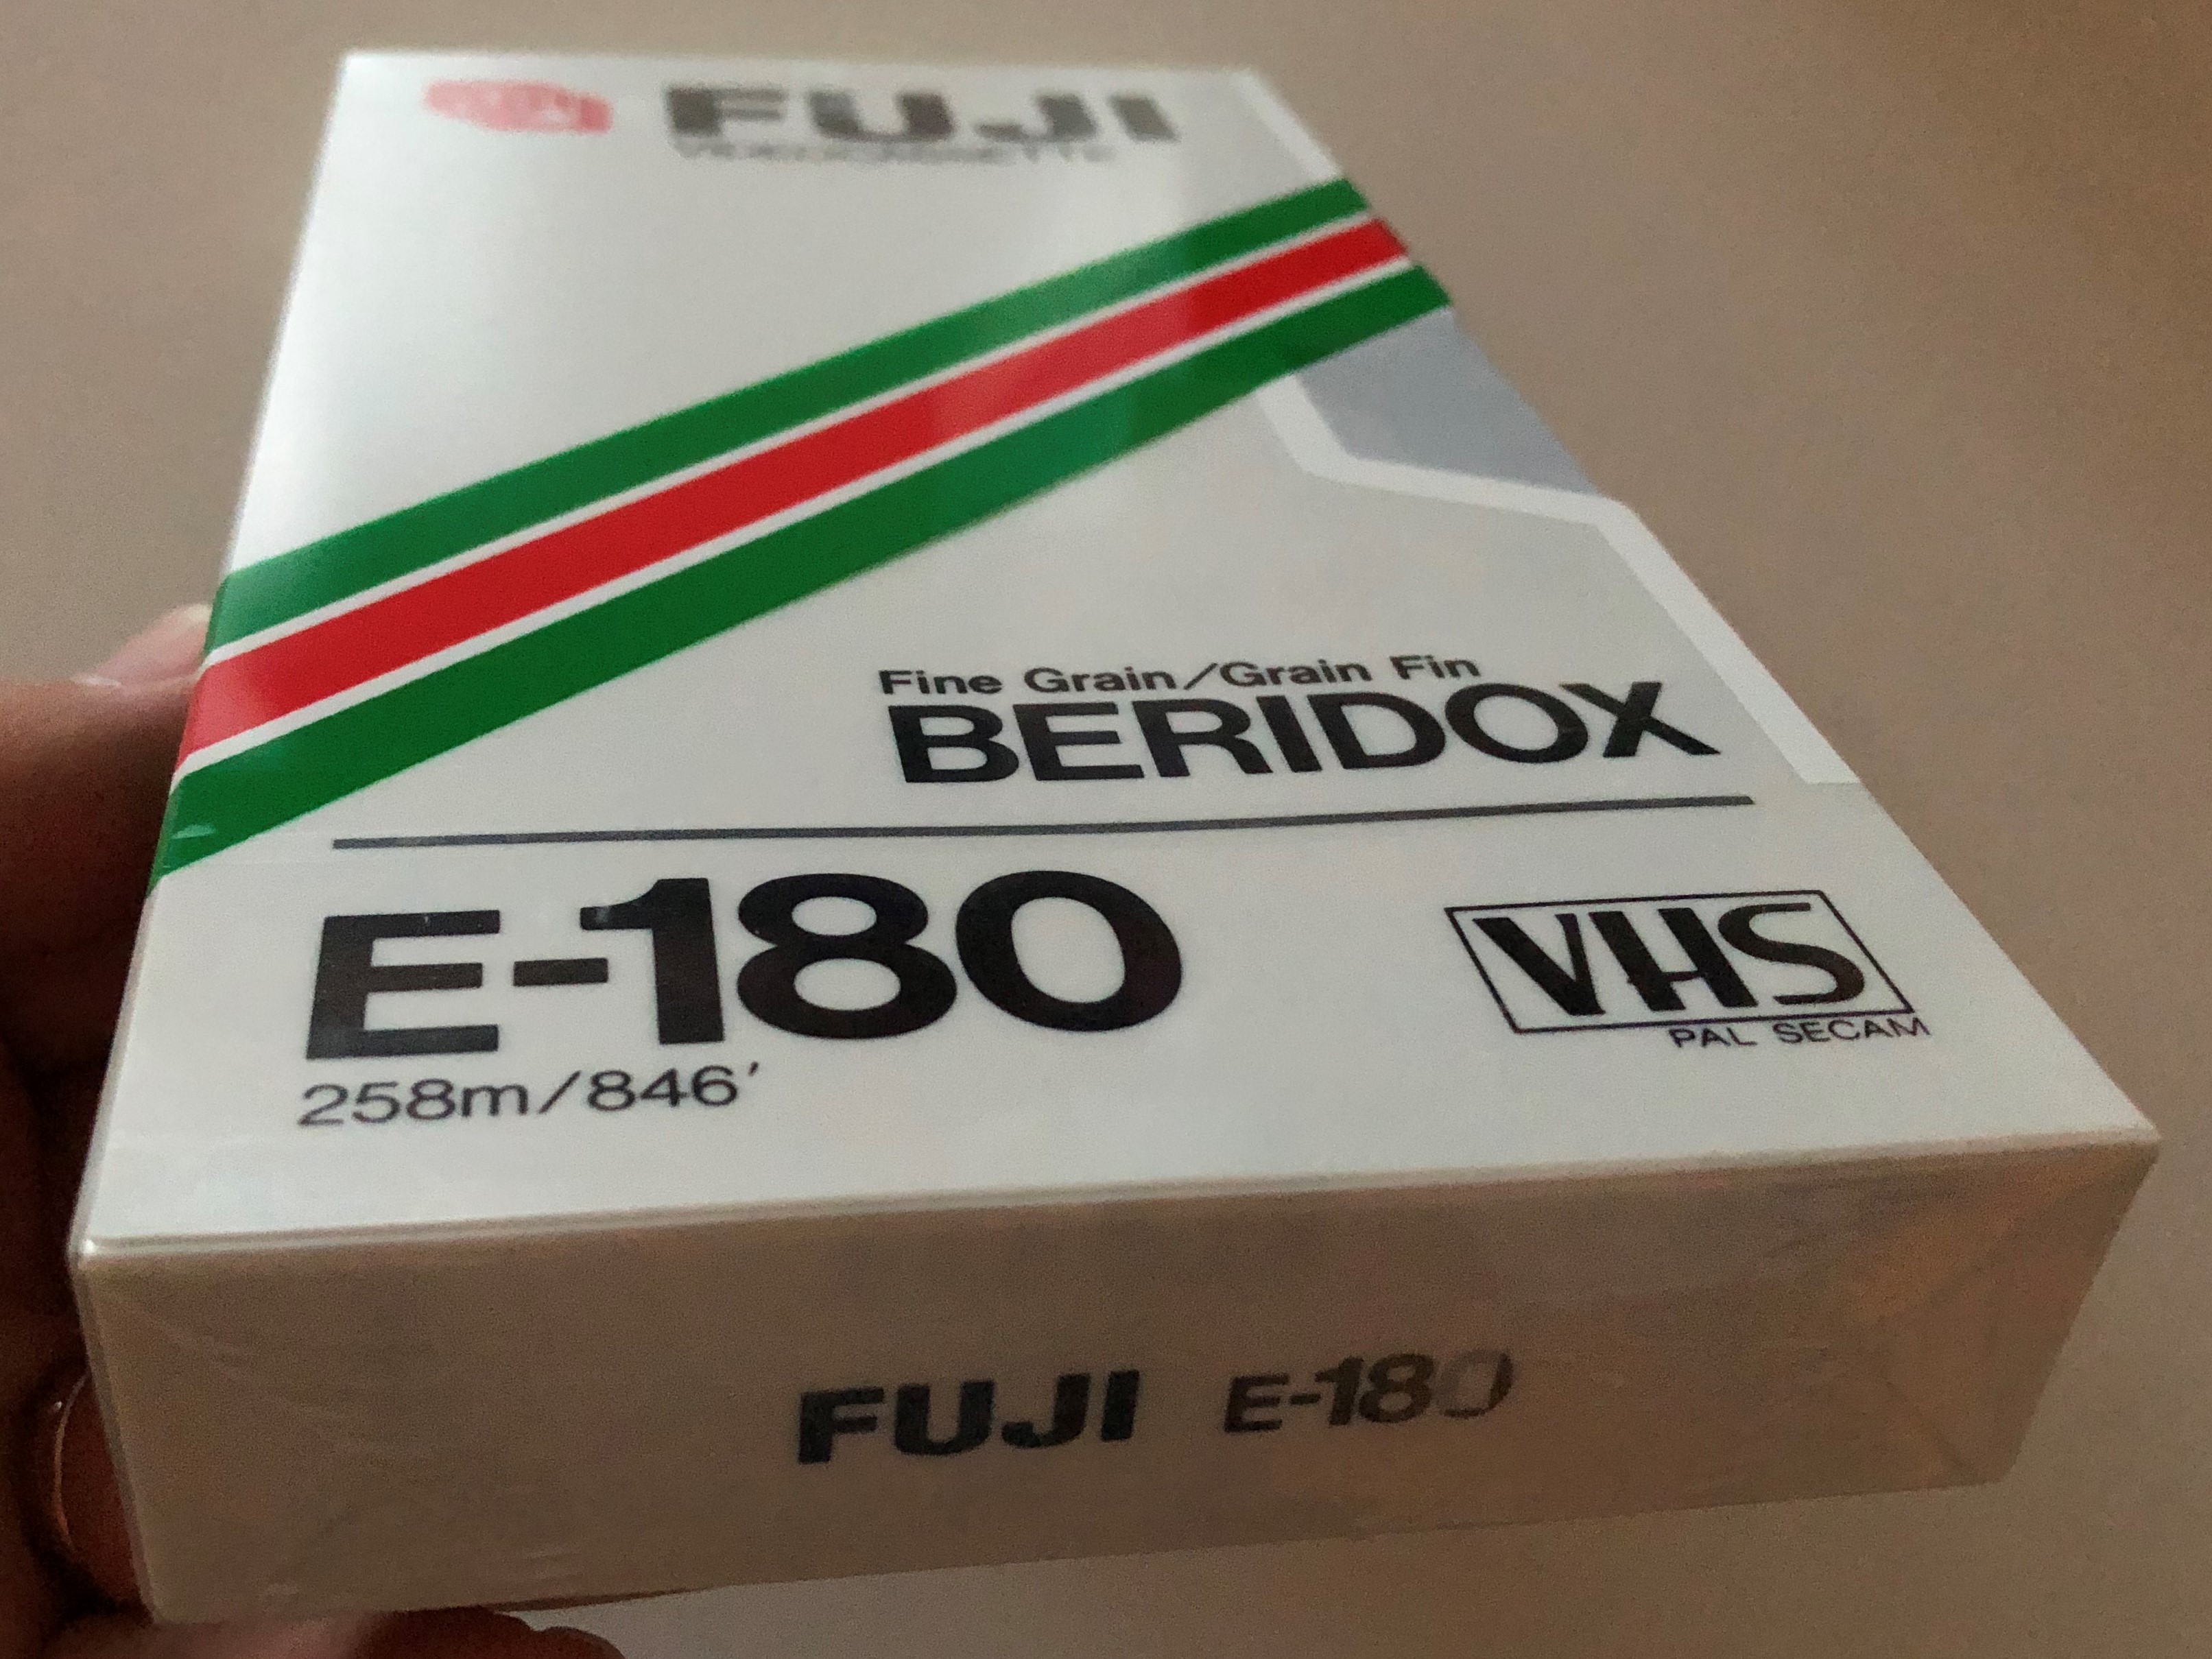 -fuji-e-180-videocassette-pal-secam-vhs-3.jpg